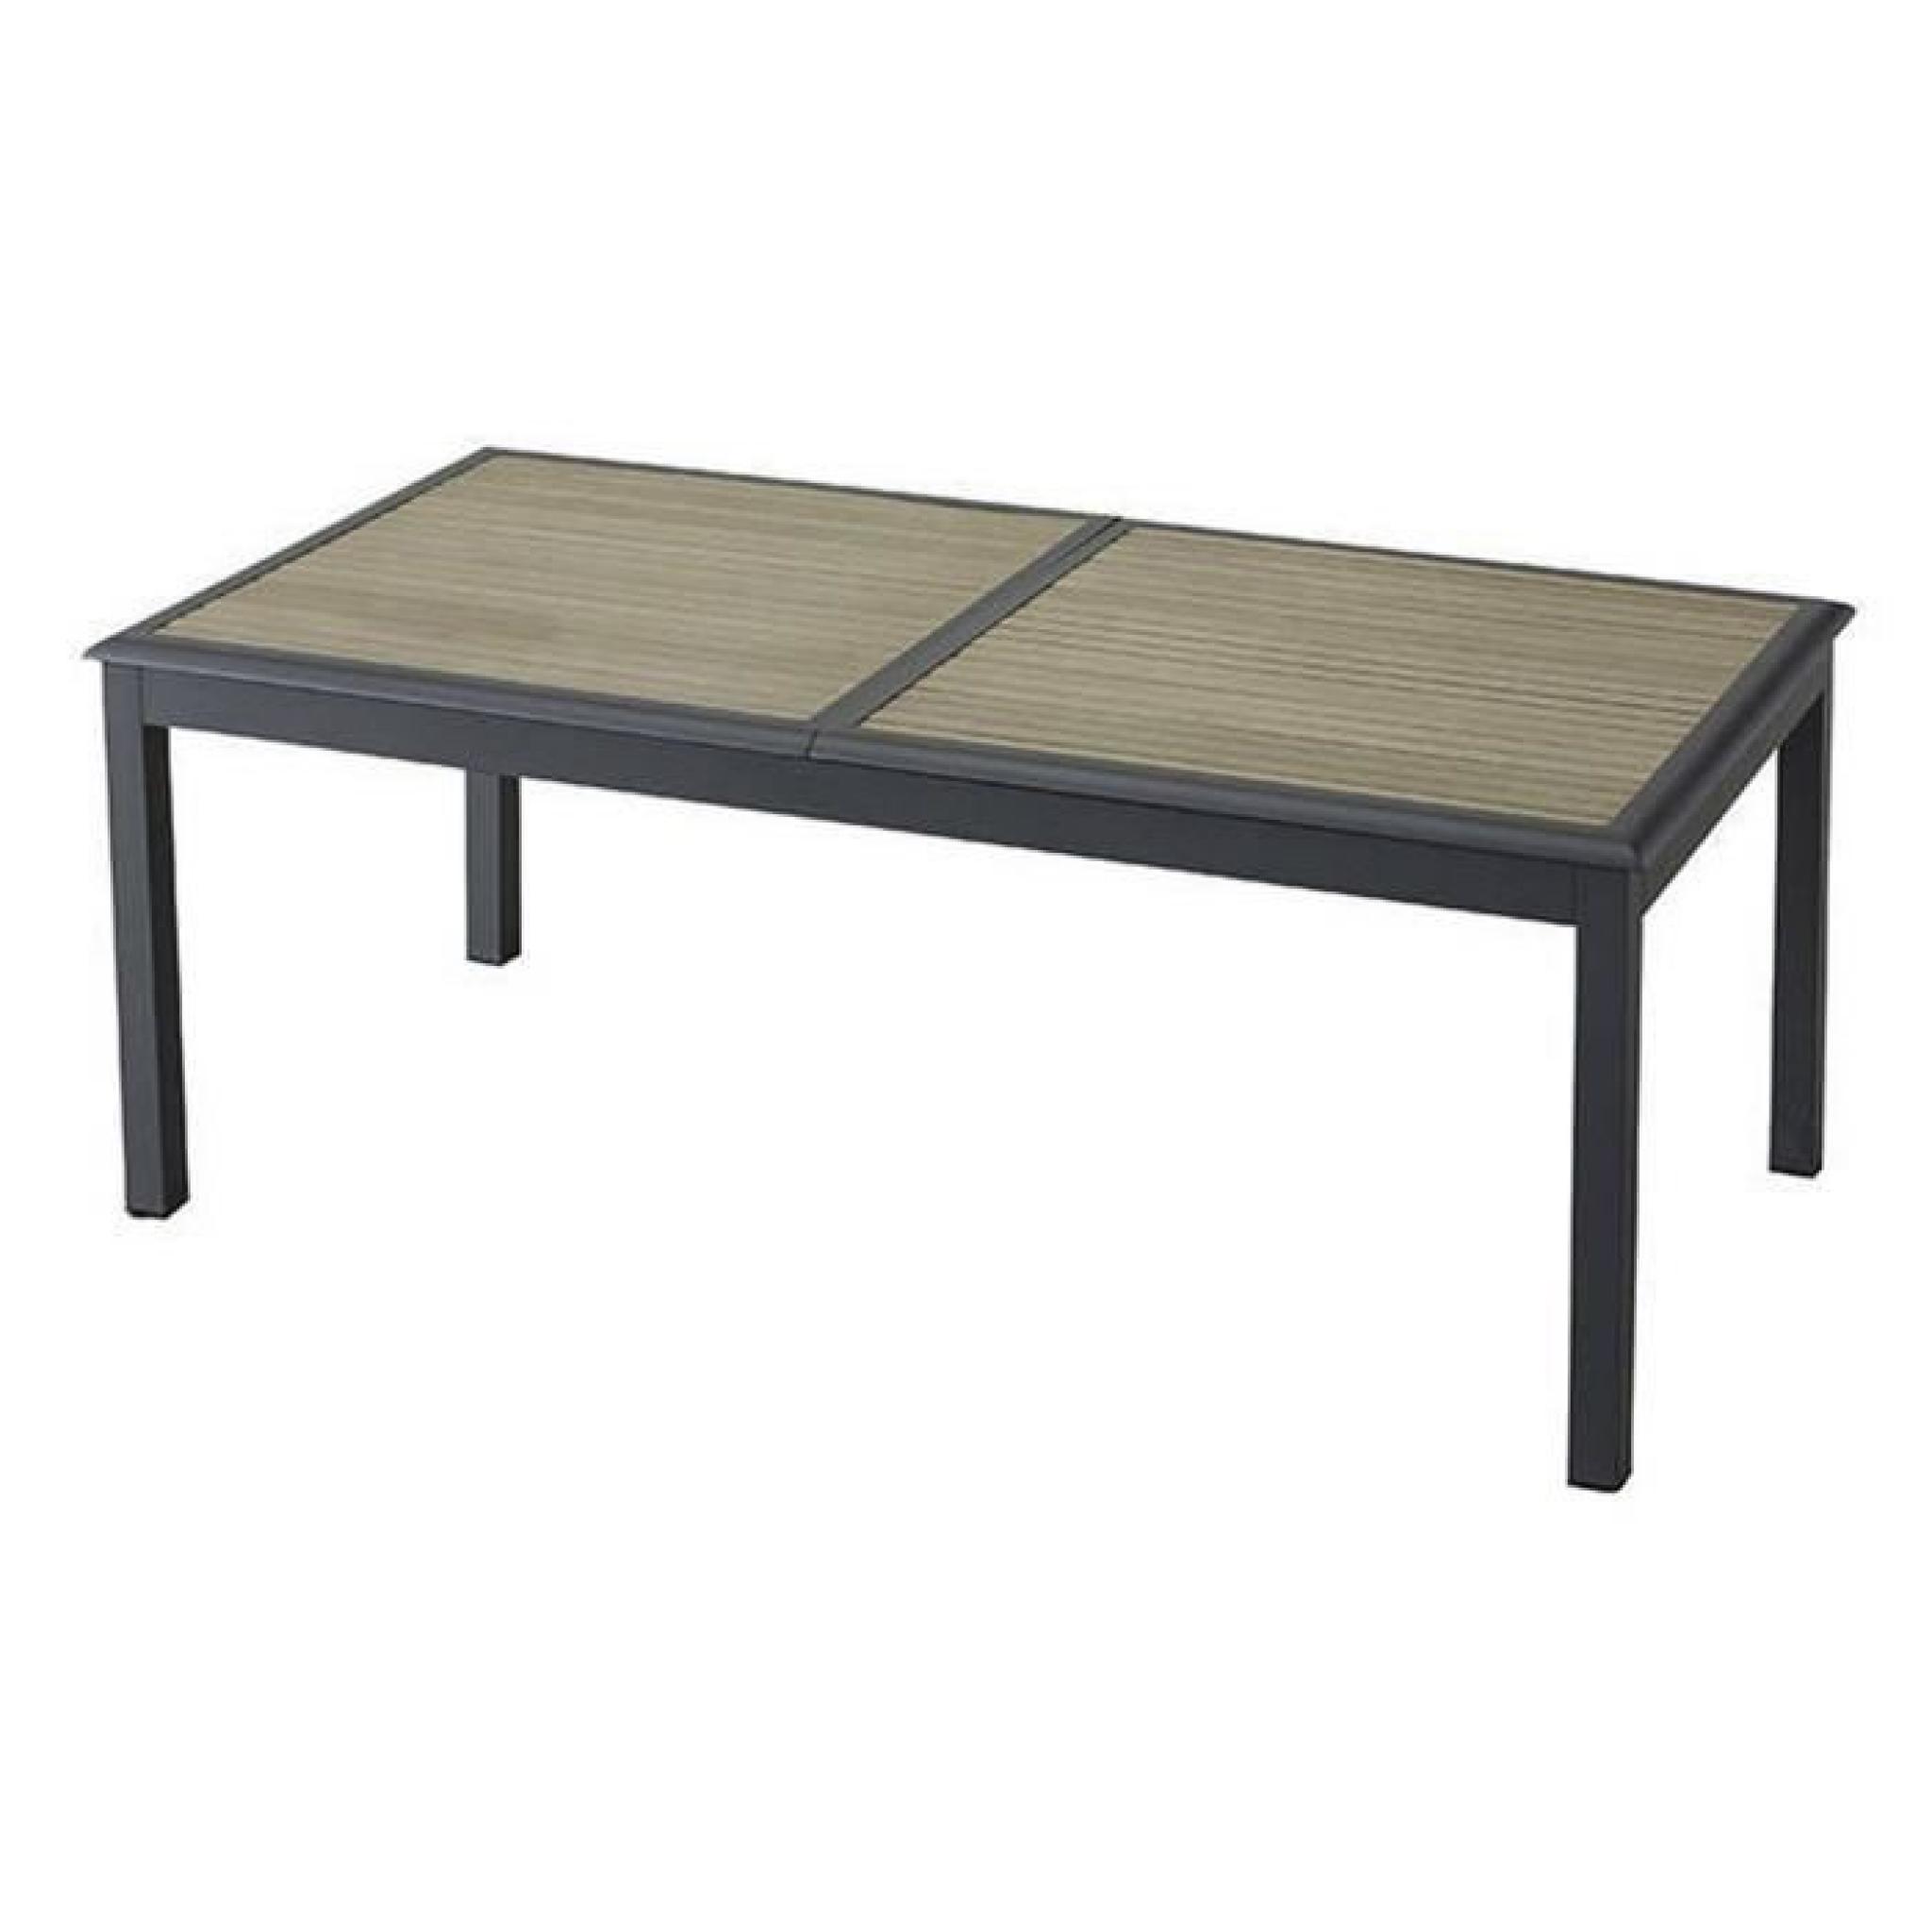 Table extensible en aluminium avec plateau taupe - Dim : L 200/300 x P 100 x H 75 cm 